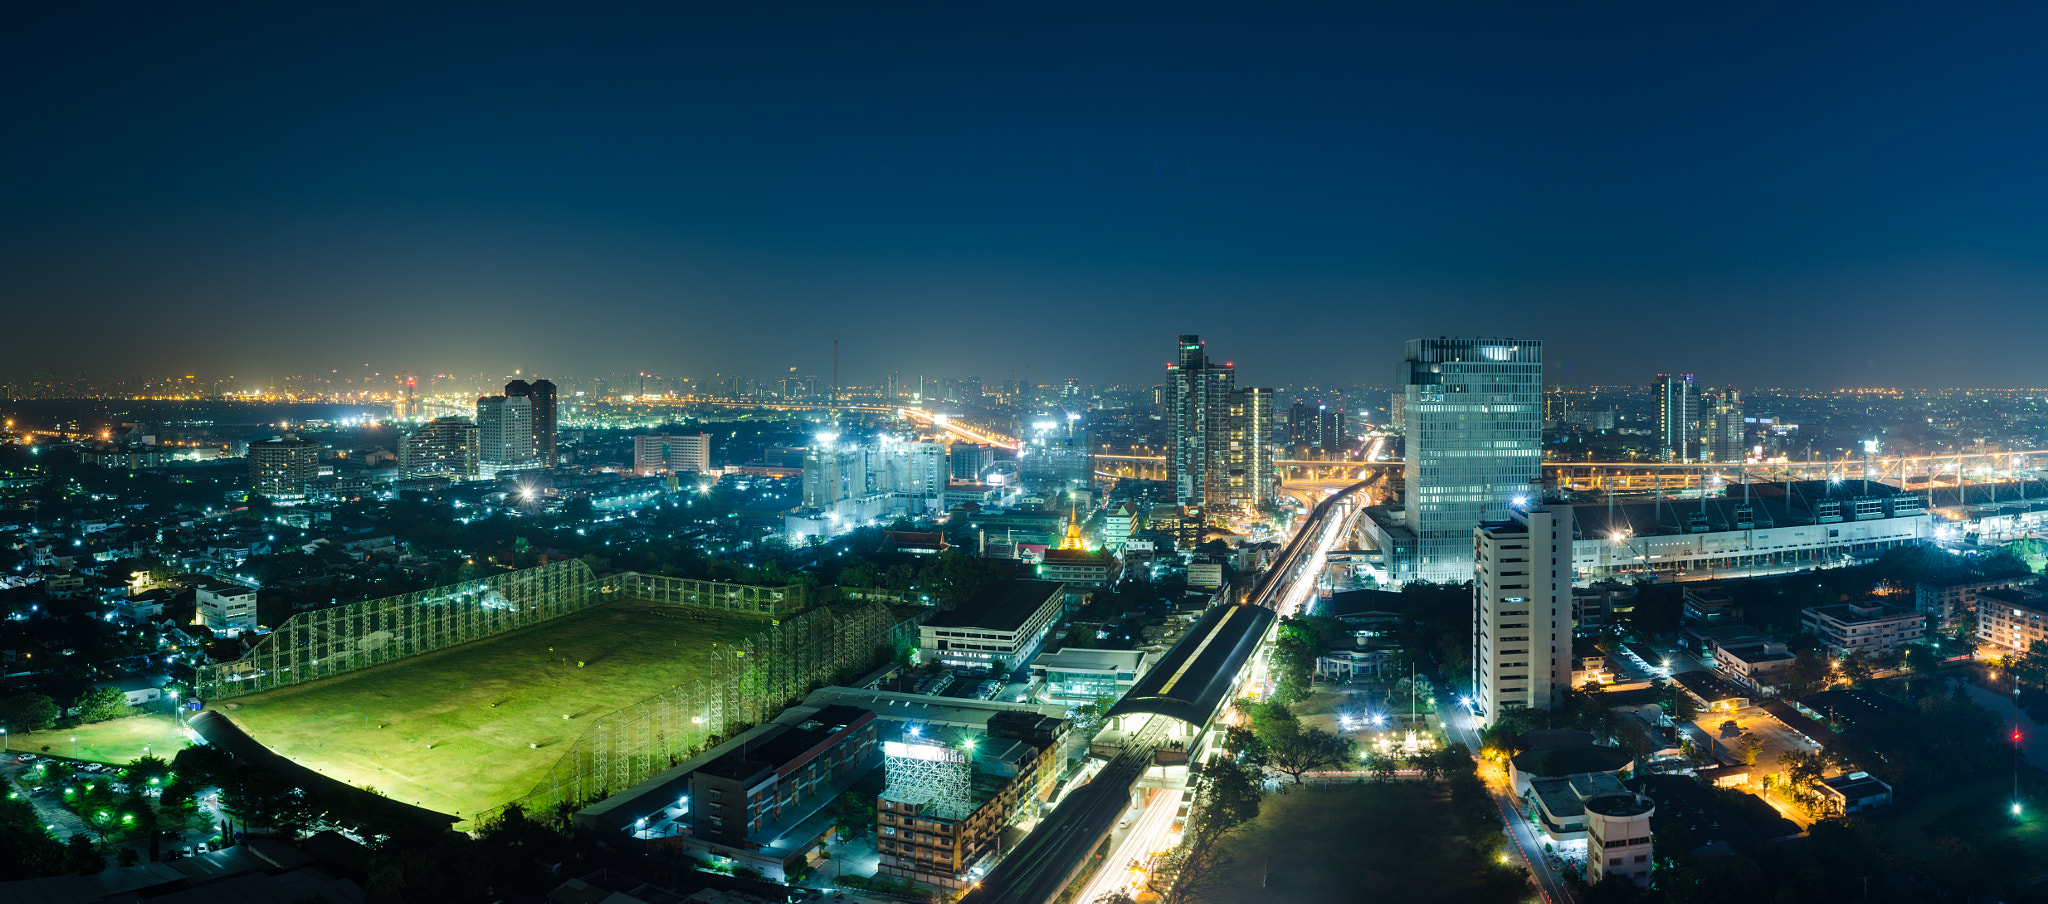 Nikon D5100 + Nikon AF-S Nikkor 24-70mm F2.8G ED sample photo. Bangkok city view at night time.thailand photography